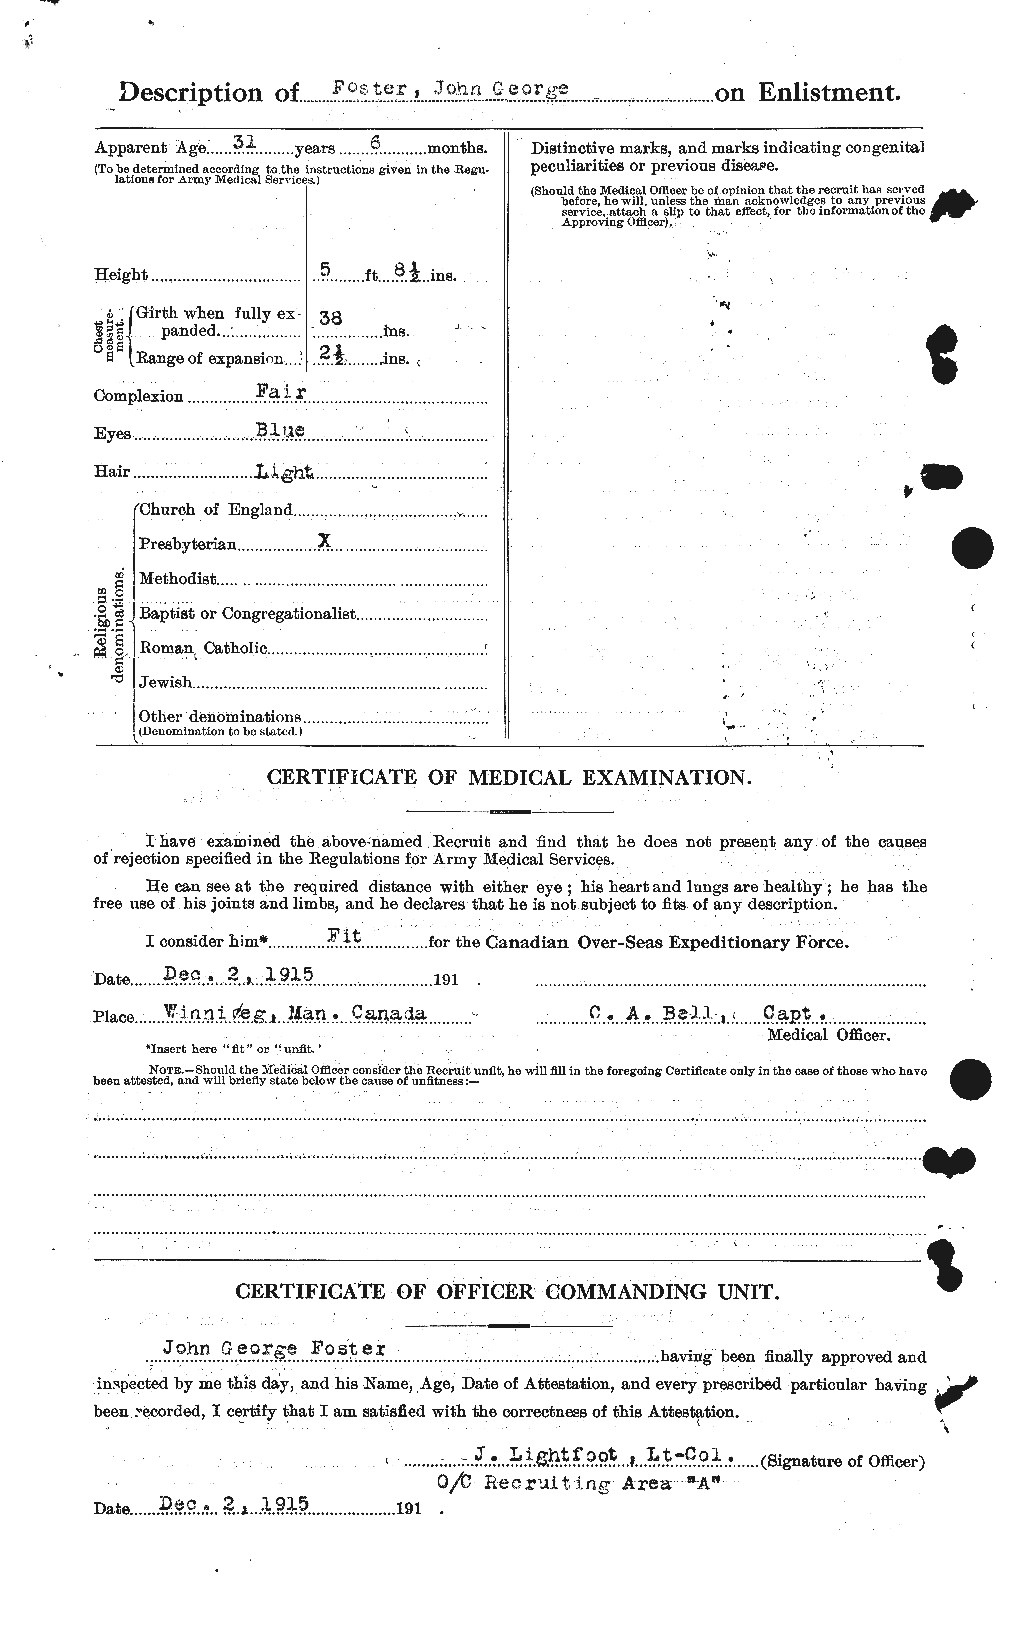 Dossiers du Personnel de la Première Guerre mondiale - CEC 333361b